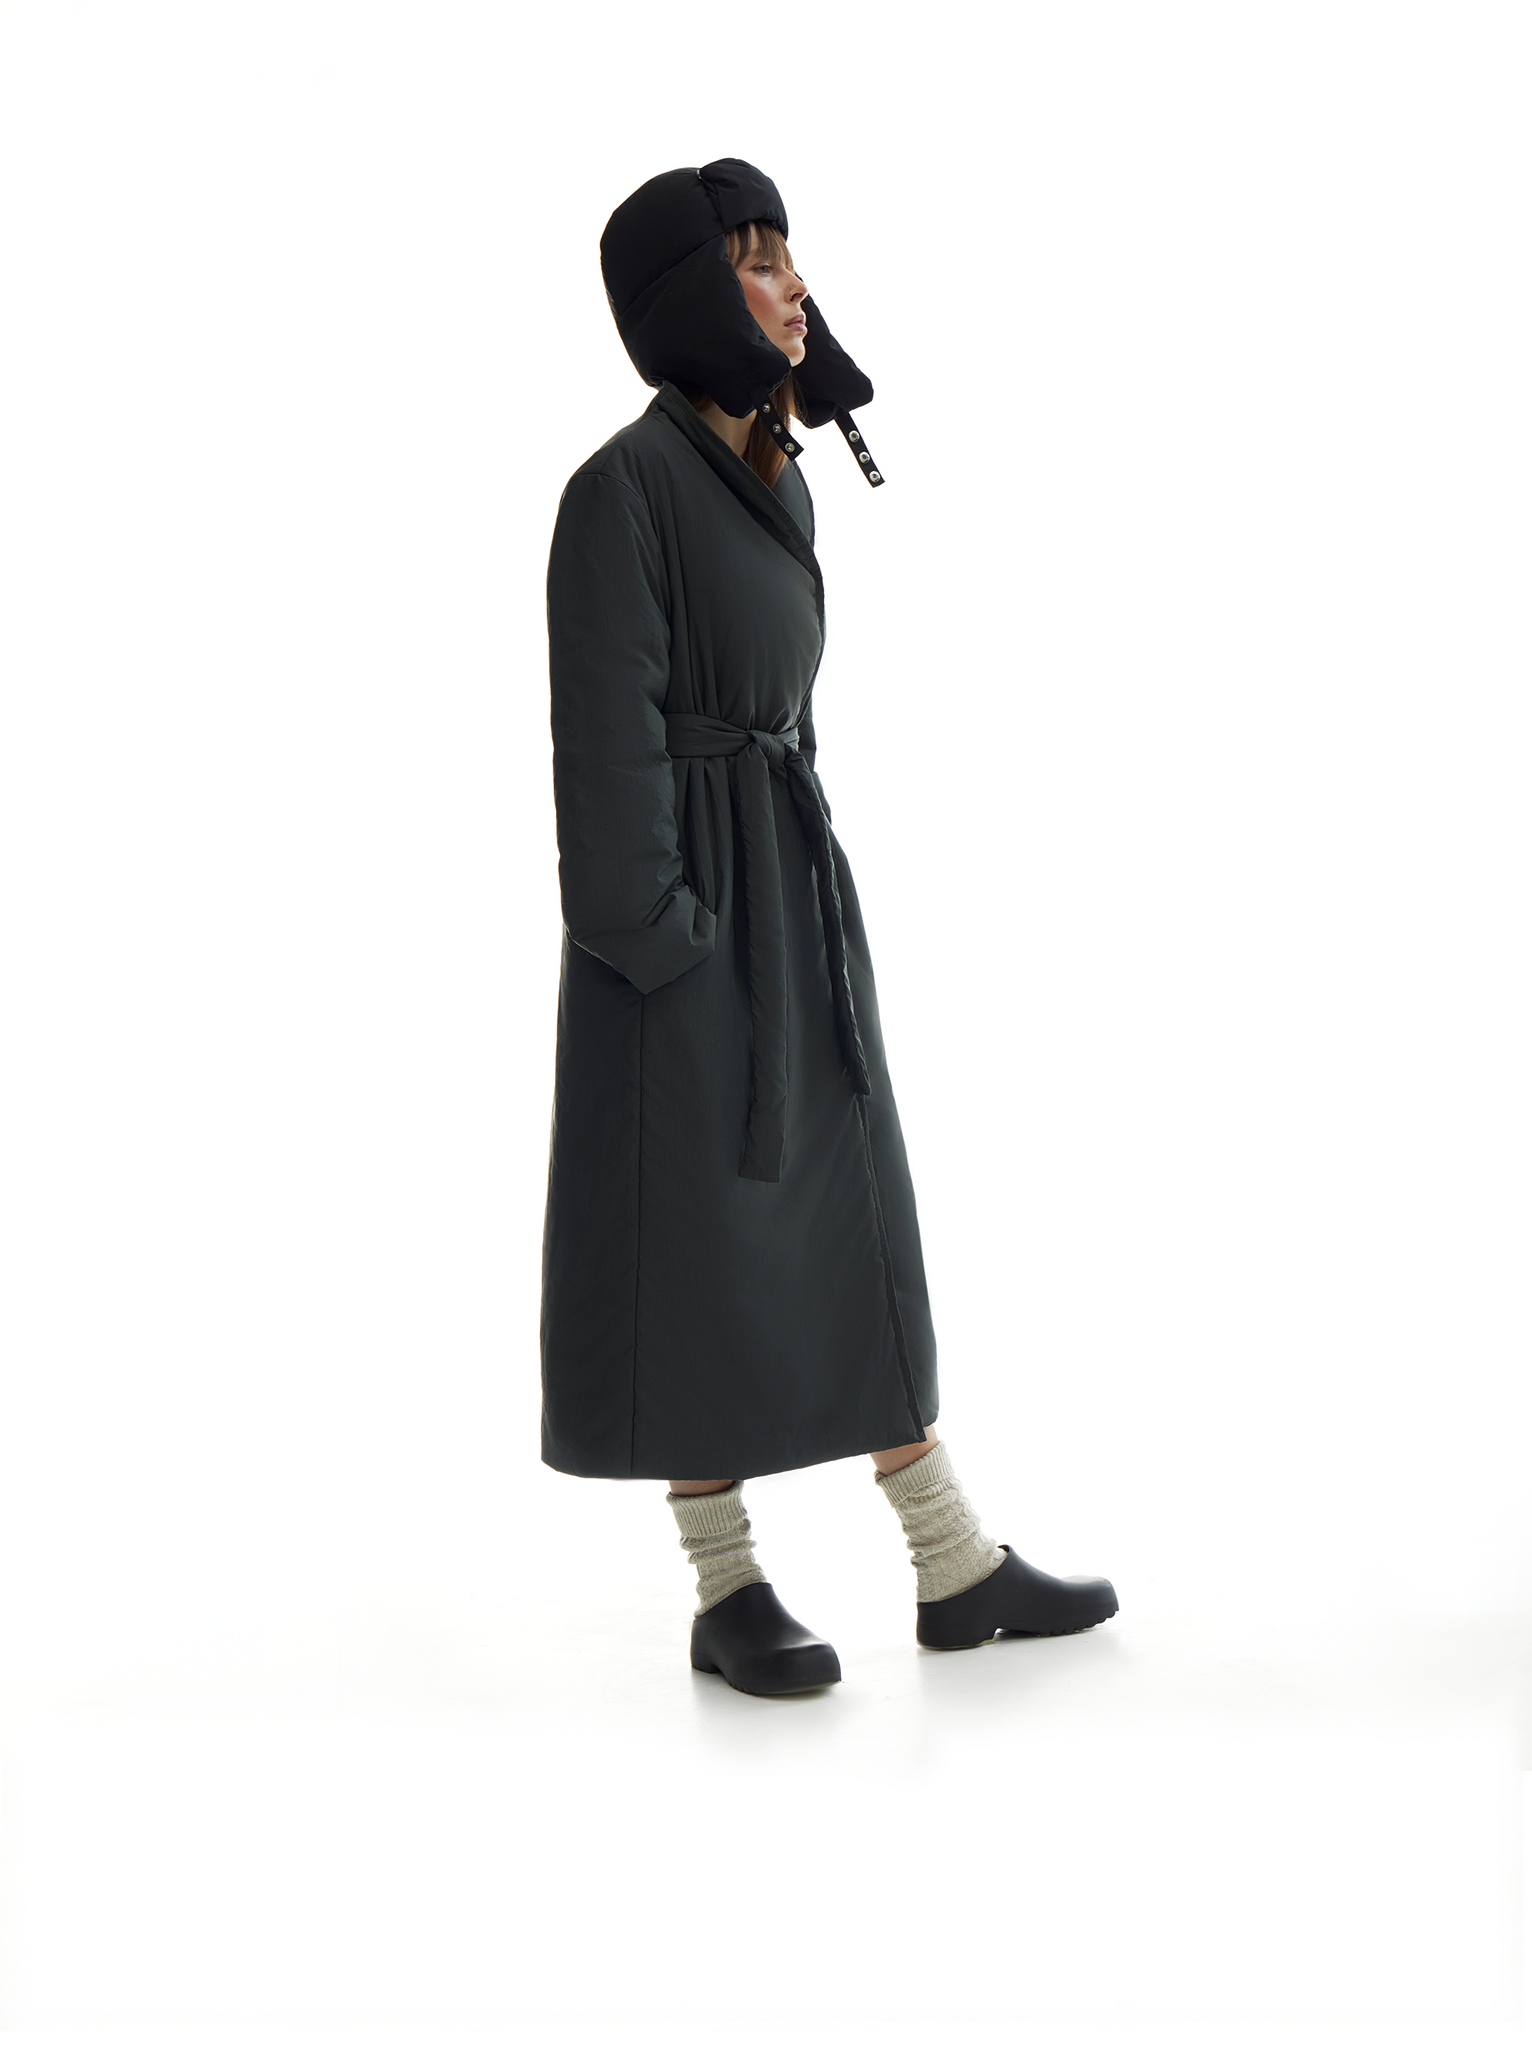 harvey padded coat in black